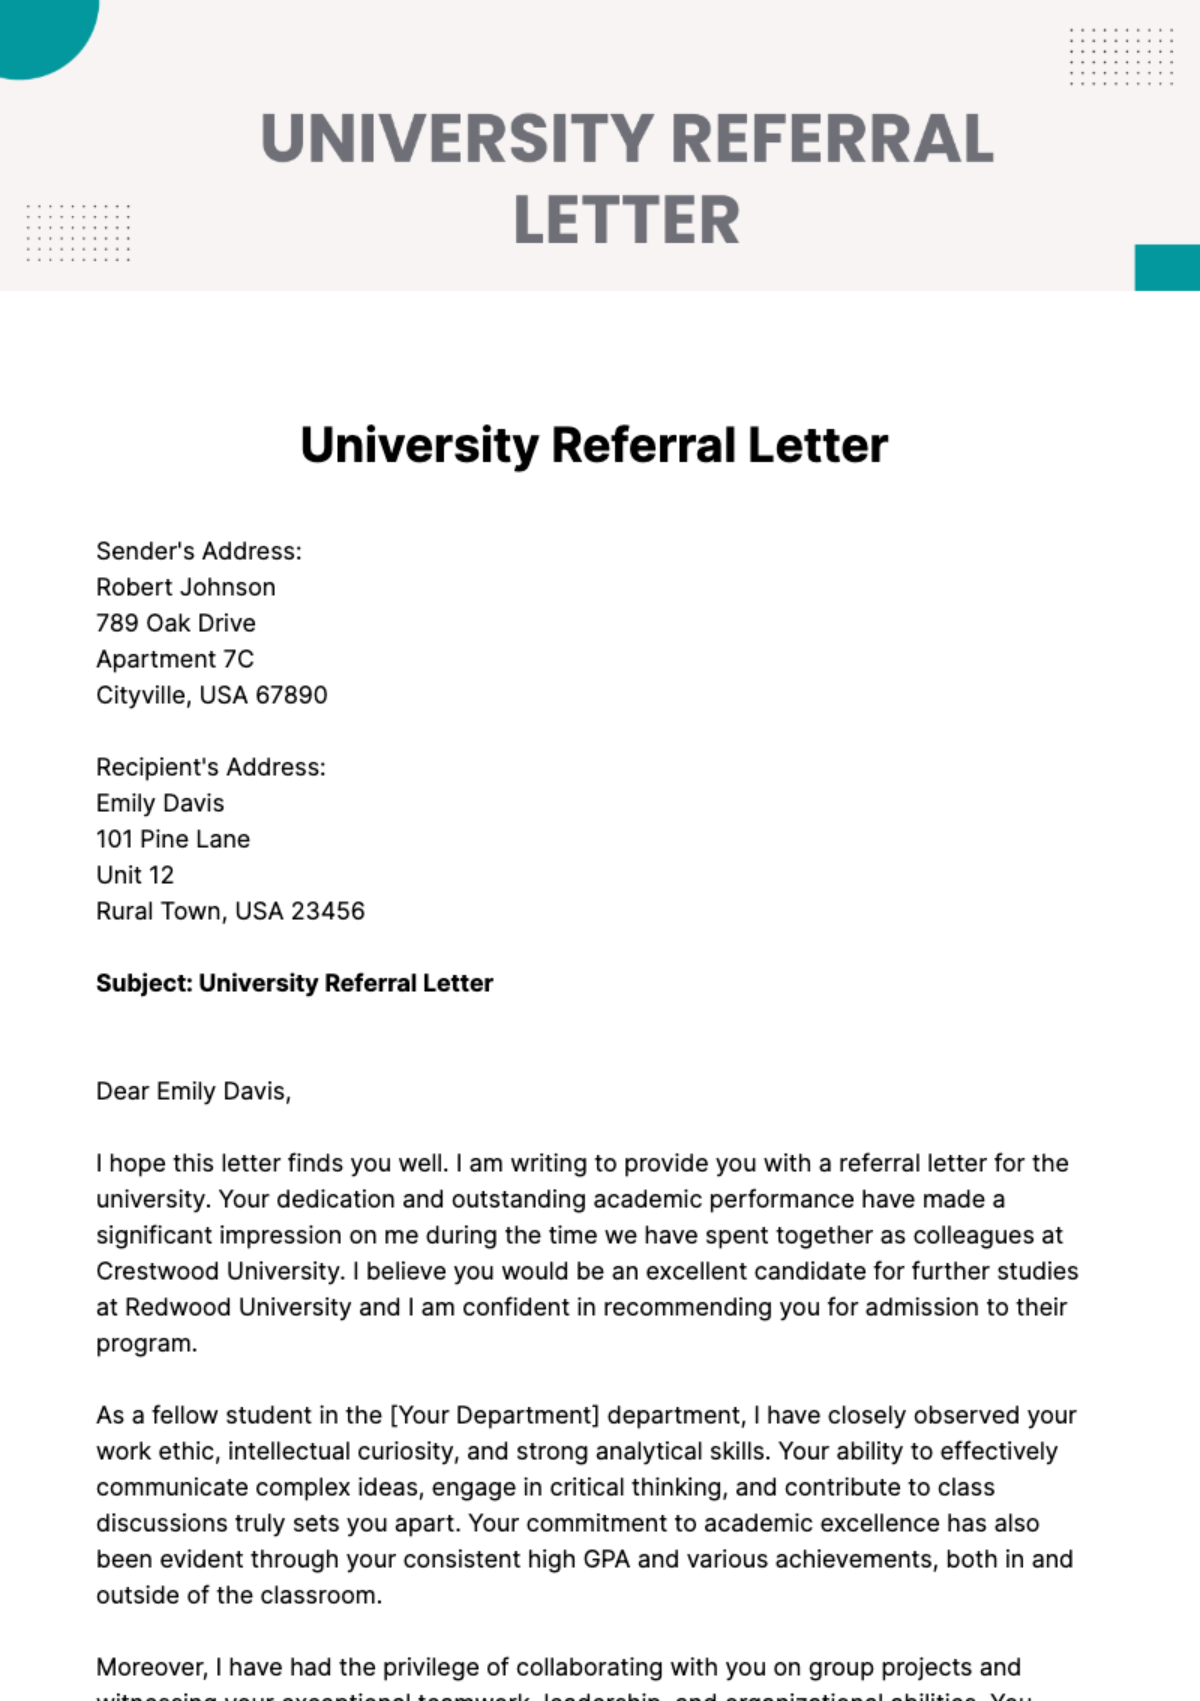 University Referral Letter Template